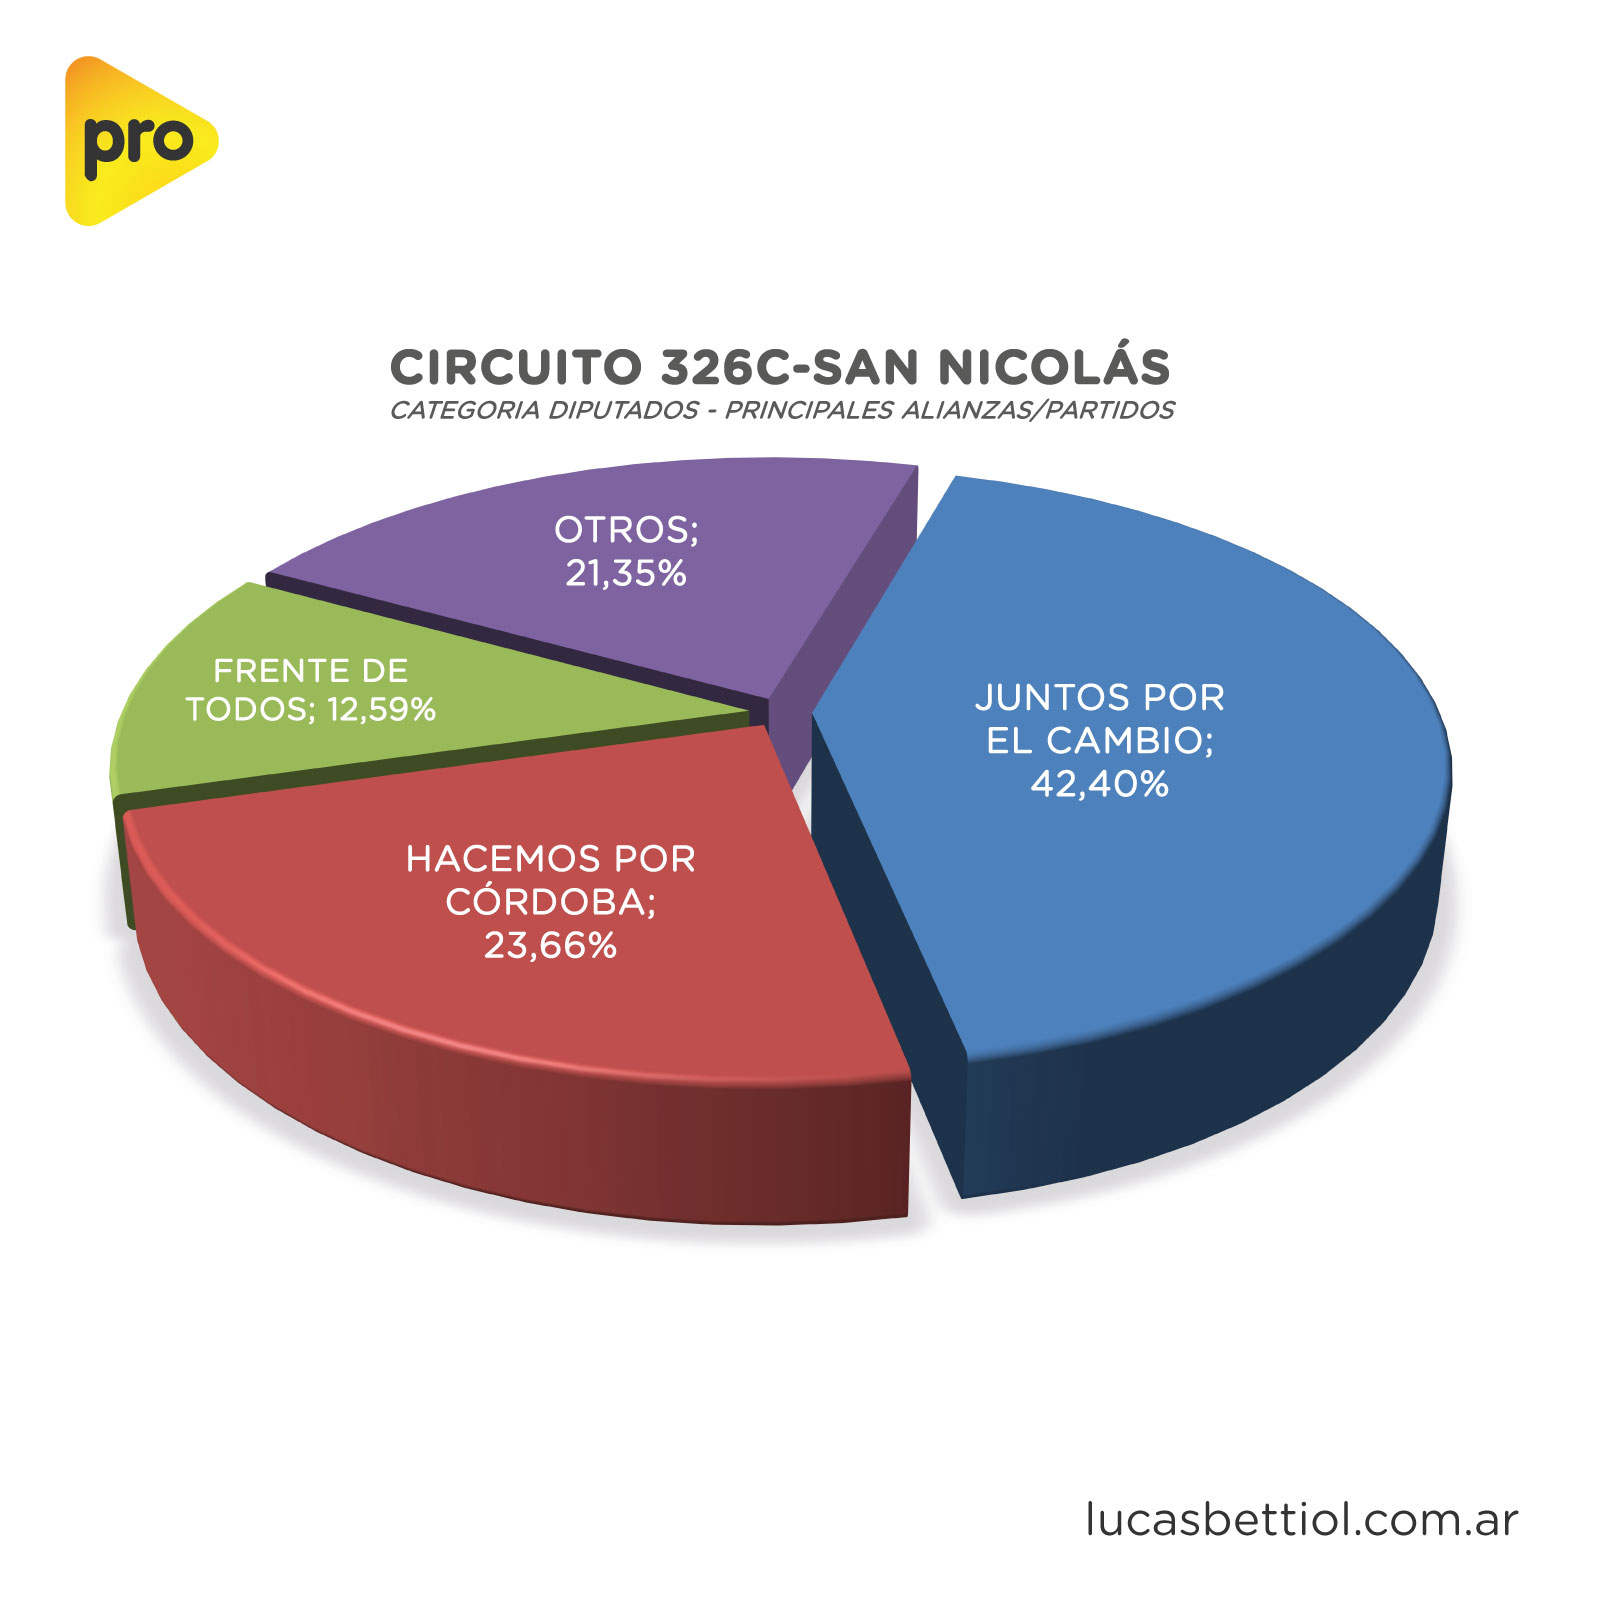 Elecciones PASO 2021 - Categoría Diputados - Gráfica de porcentuales que obtuvieron en el circuito 326C-San Nicolás las principales alianzas